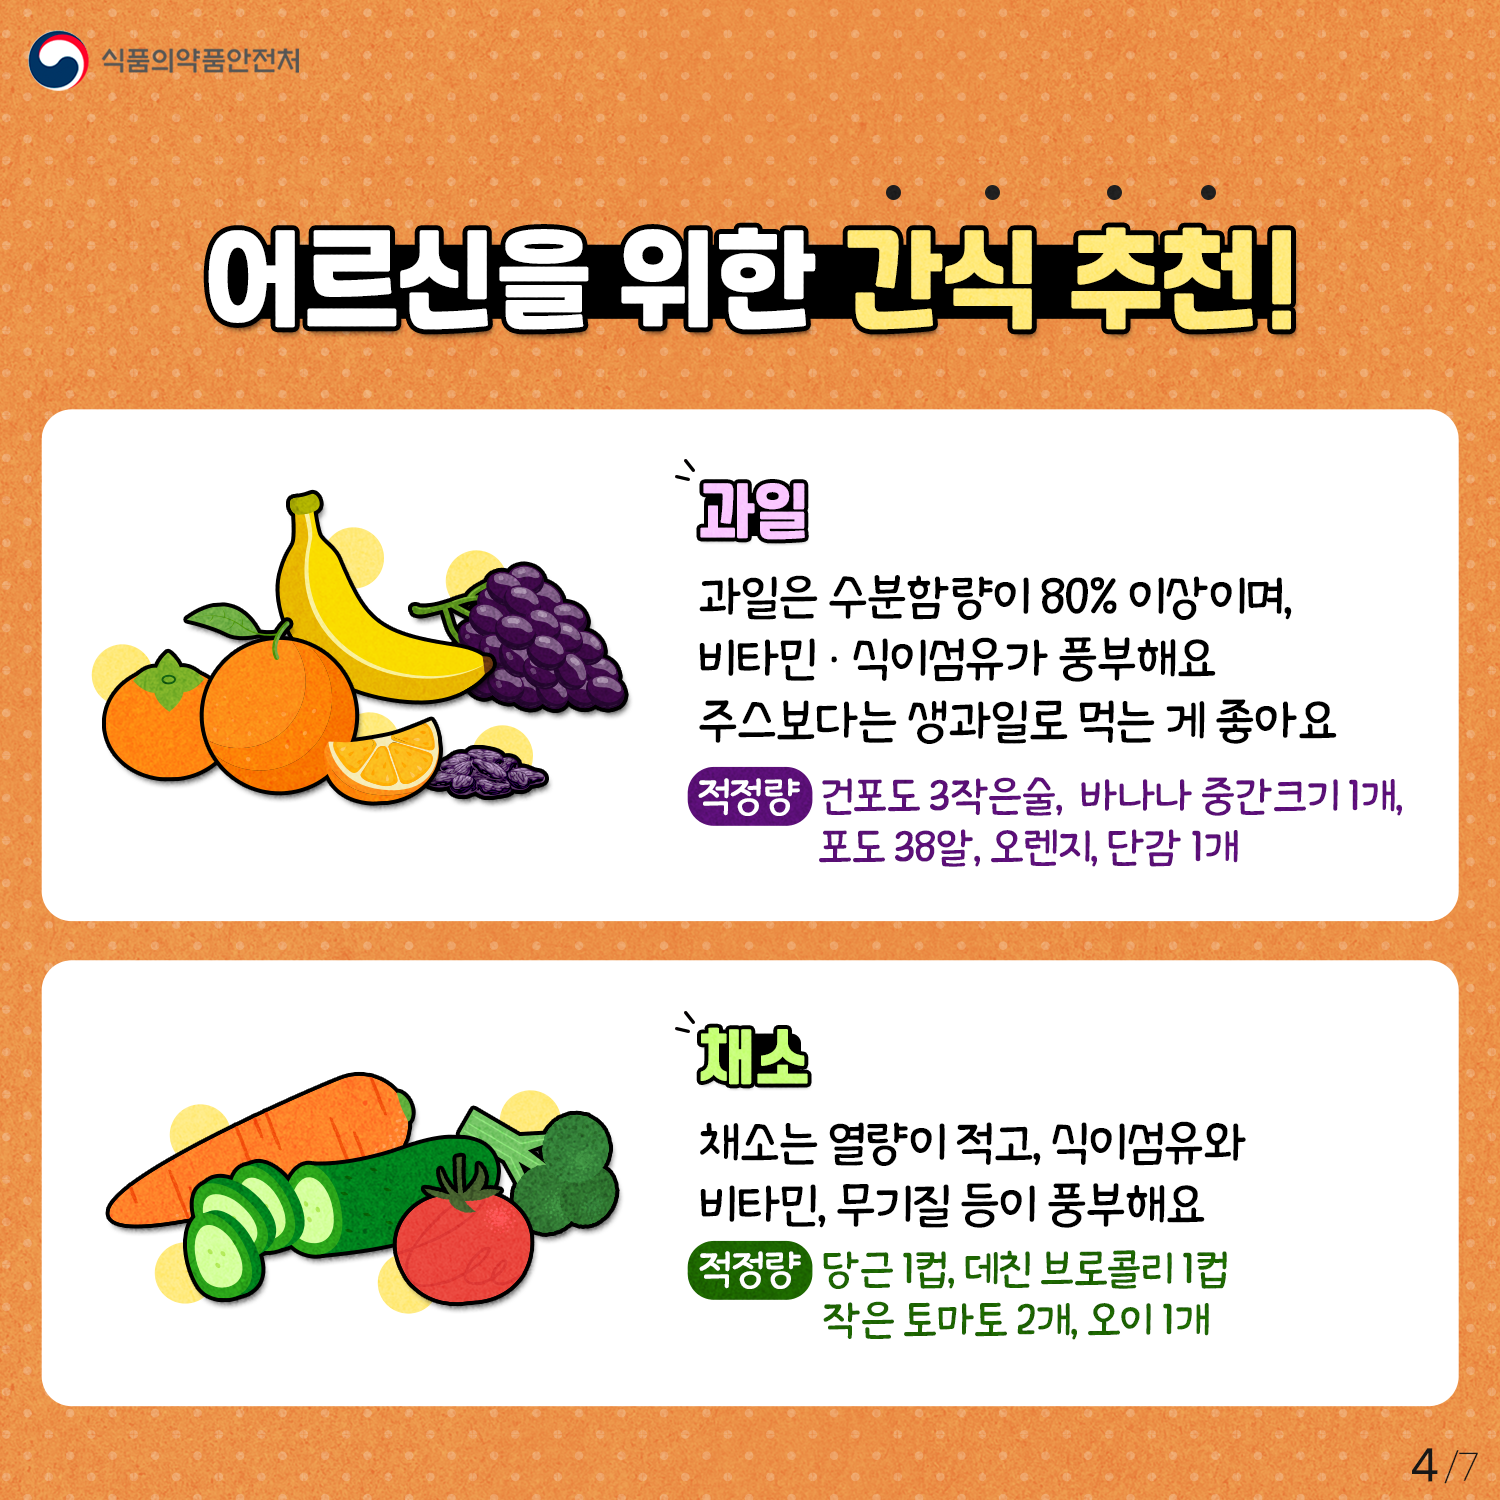 어르신을 위한 간식 추천!- 과일: 과일은 수분함량이 80% 이상이며, 비타민·식이섬유가 풍부해요. 주스보다는 생과일로 먹는게 좋아요.[적정량] 건포도 3작은술, 바나나 중간크기 1개, 포도 38알, 오렌지·단감 1개- 채소: 채소는 열량이 적고, 식이섬유와 비타민, 무기질 등이 풍부해요[적정량] 당근1컵, 데친 브로콜리 1컵, 작은 토마토 2개, 오이 1개